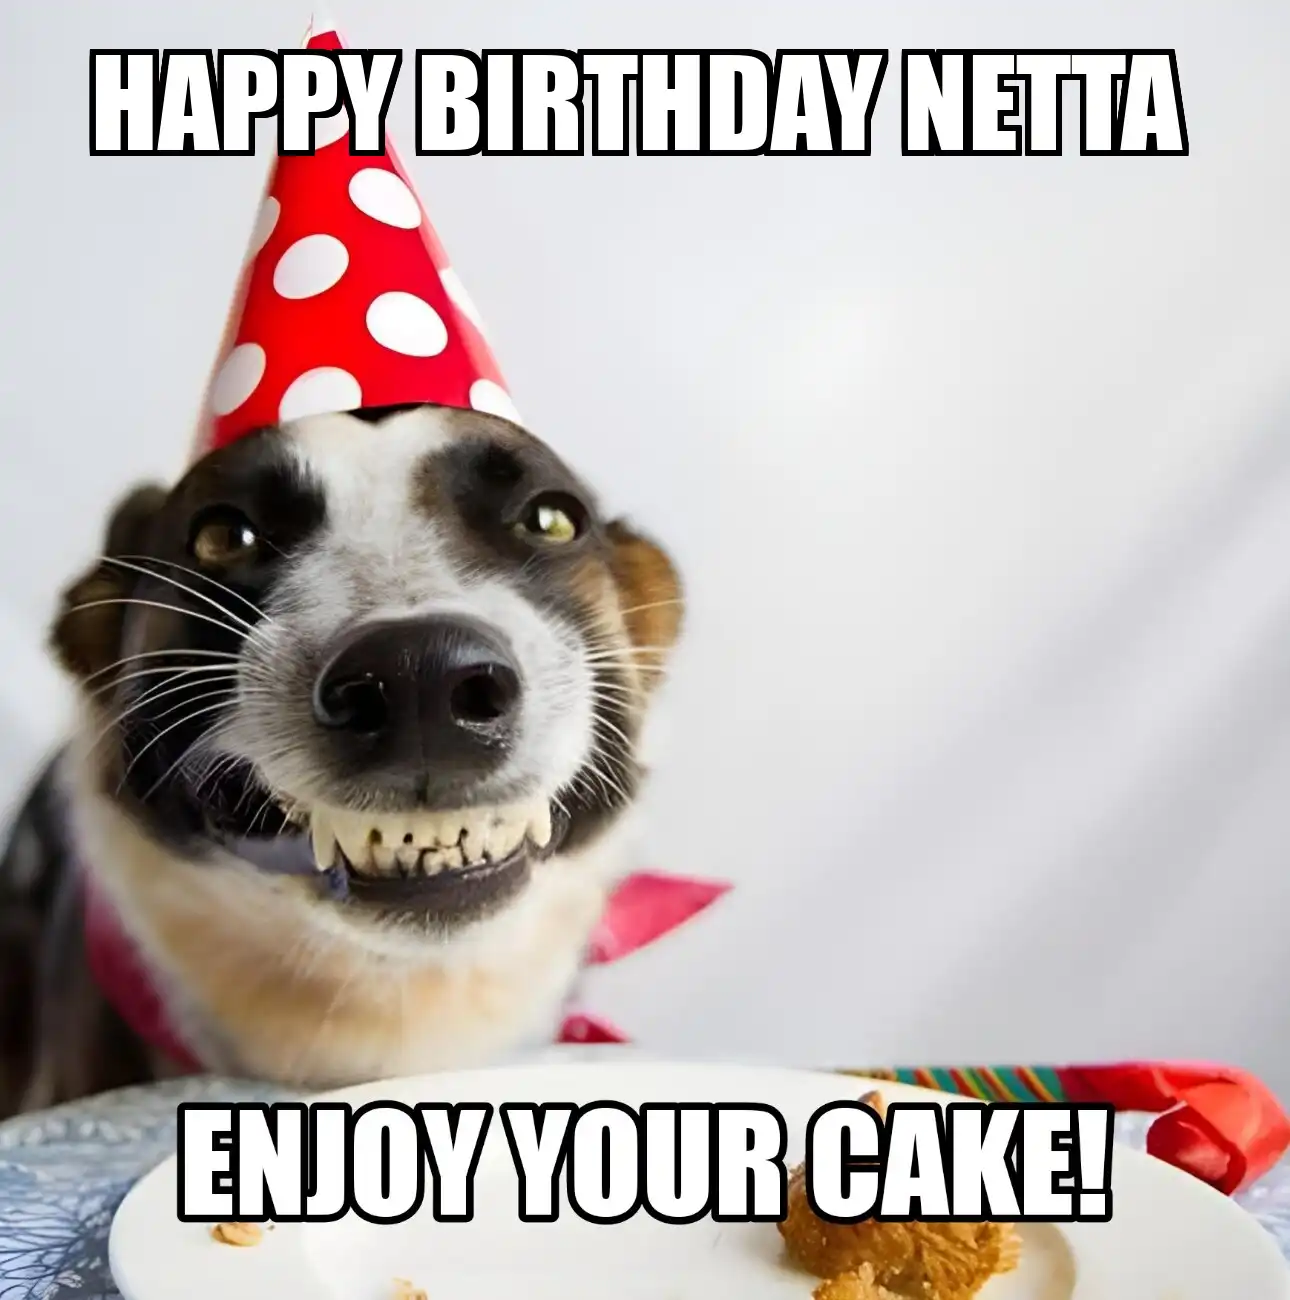 Happy Birthday Netta Enjoy Your Cake Dog Meme